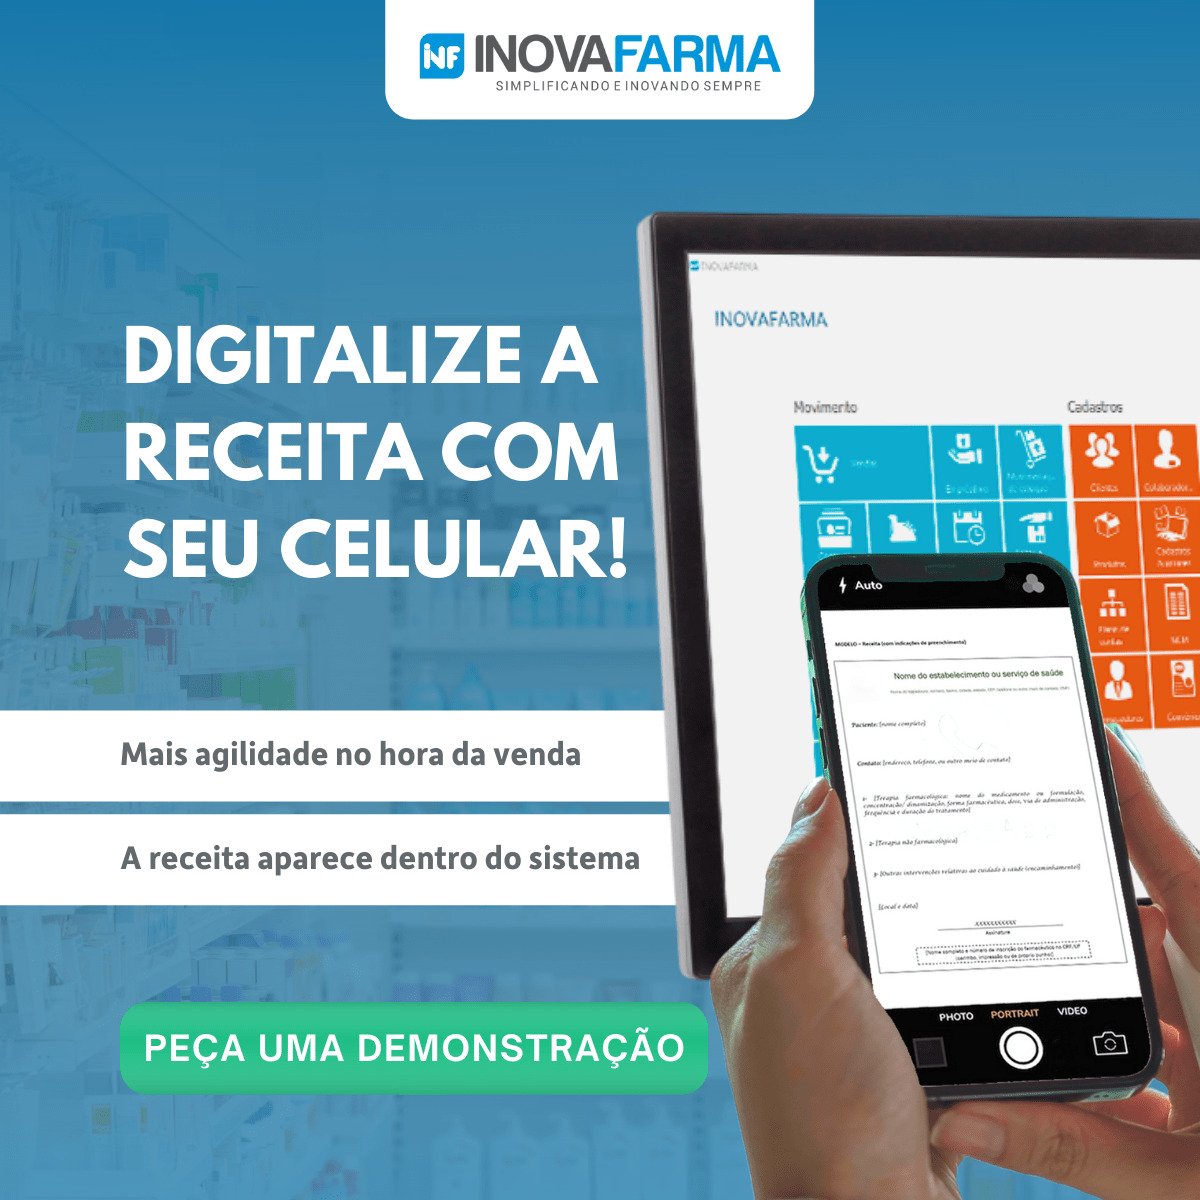 INOVAFARMA - Digitalize a receita pelo celular